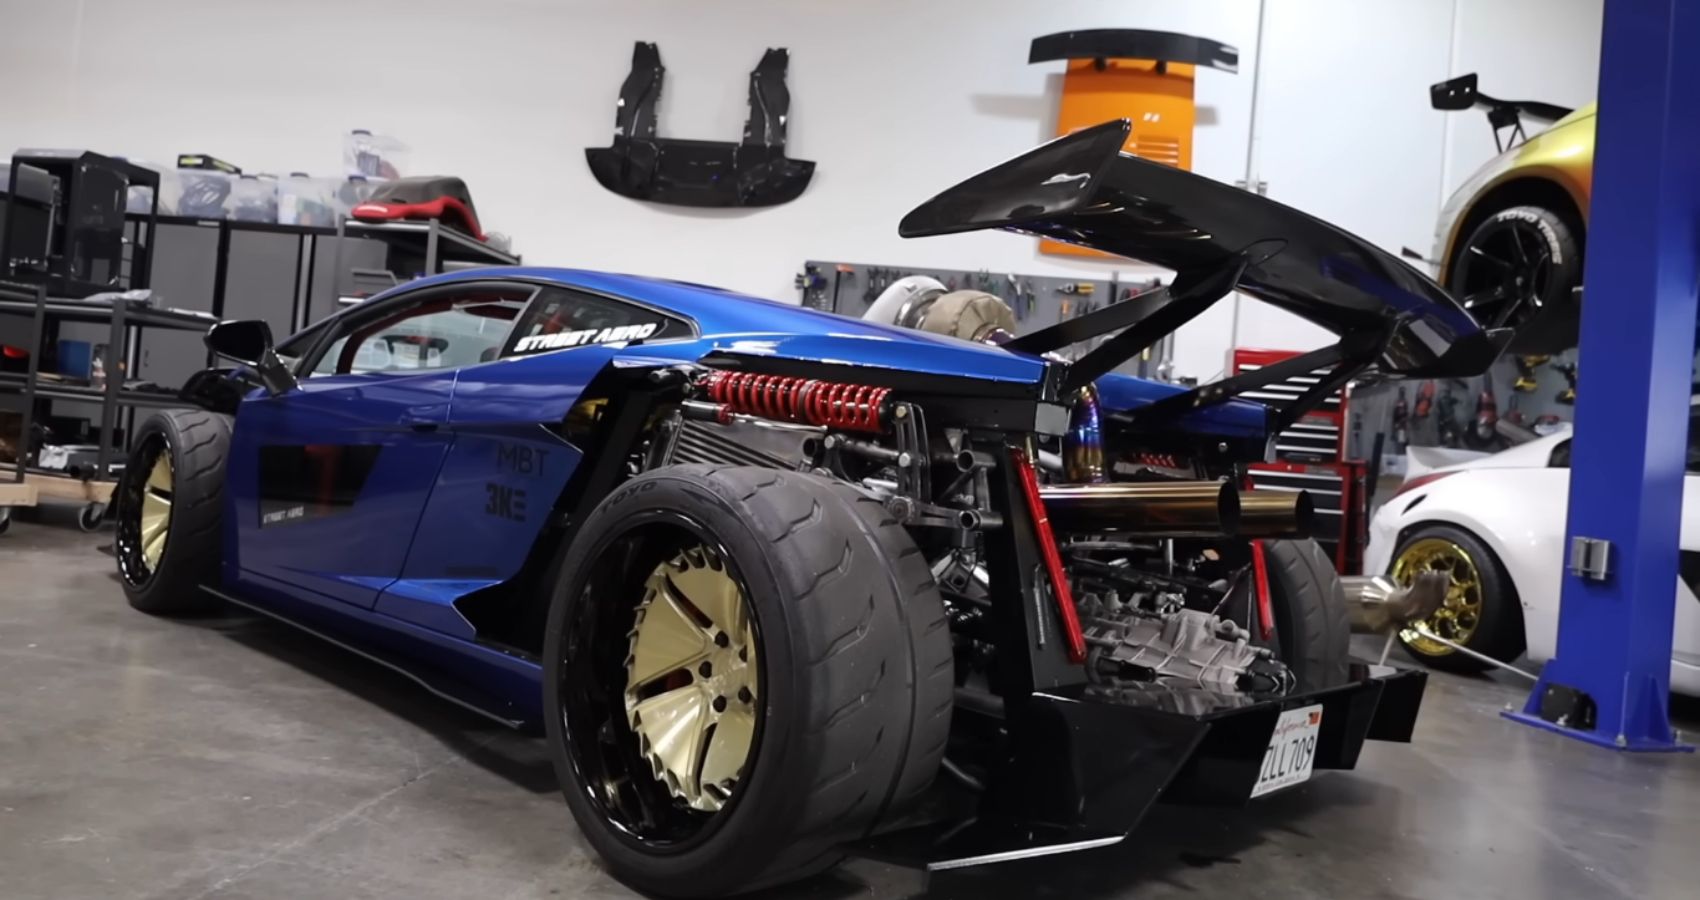 Lamborghini Gallardo Modified With A 2JZ Rear Three-Quarter View